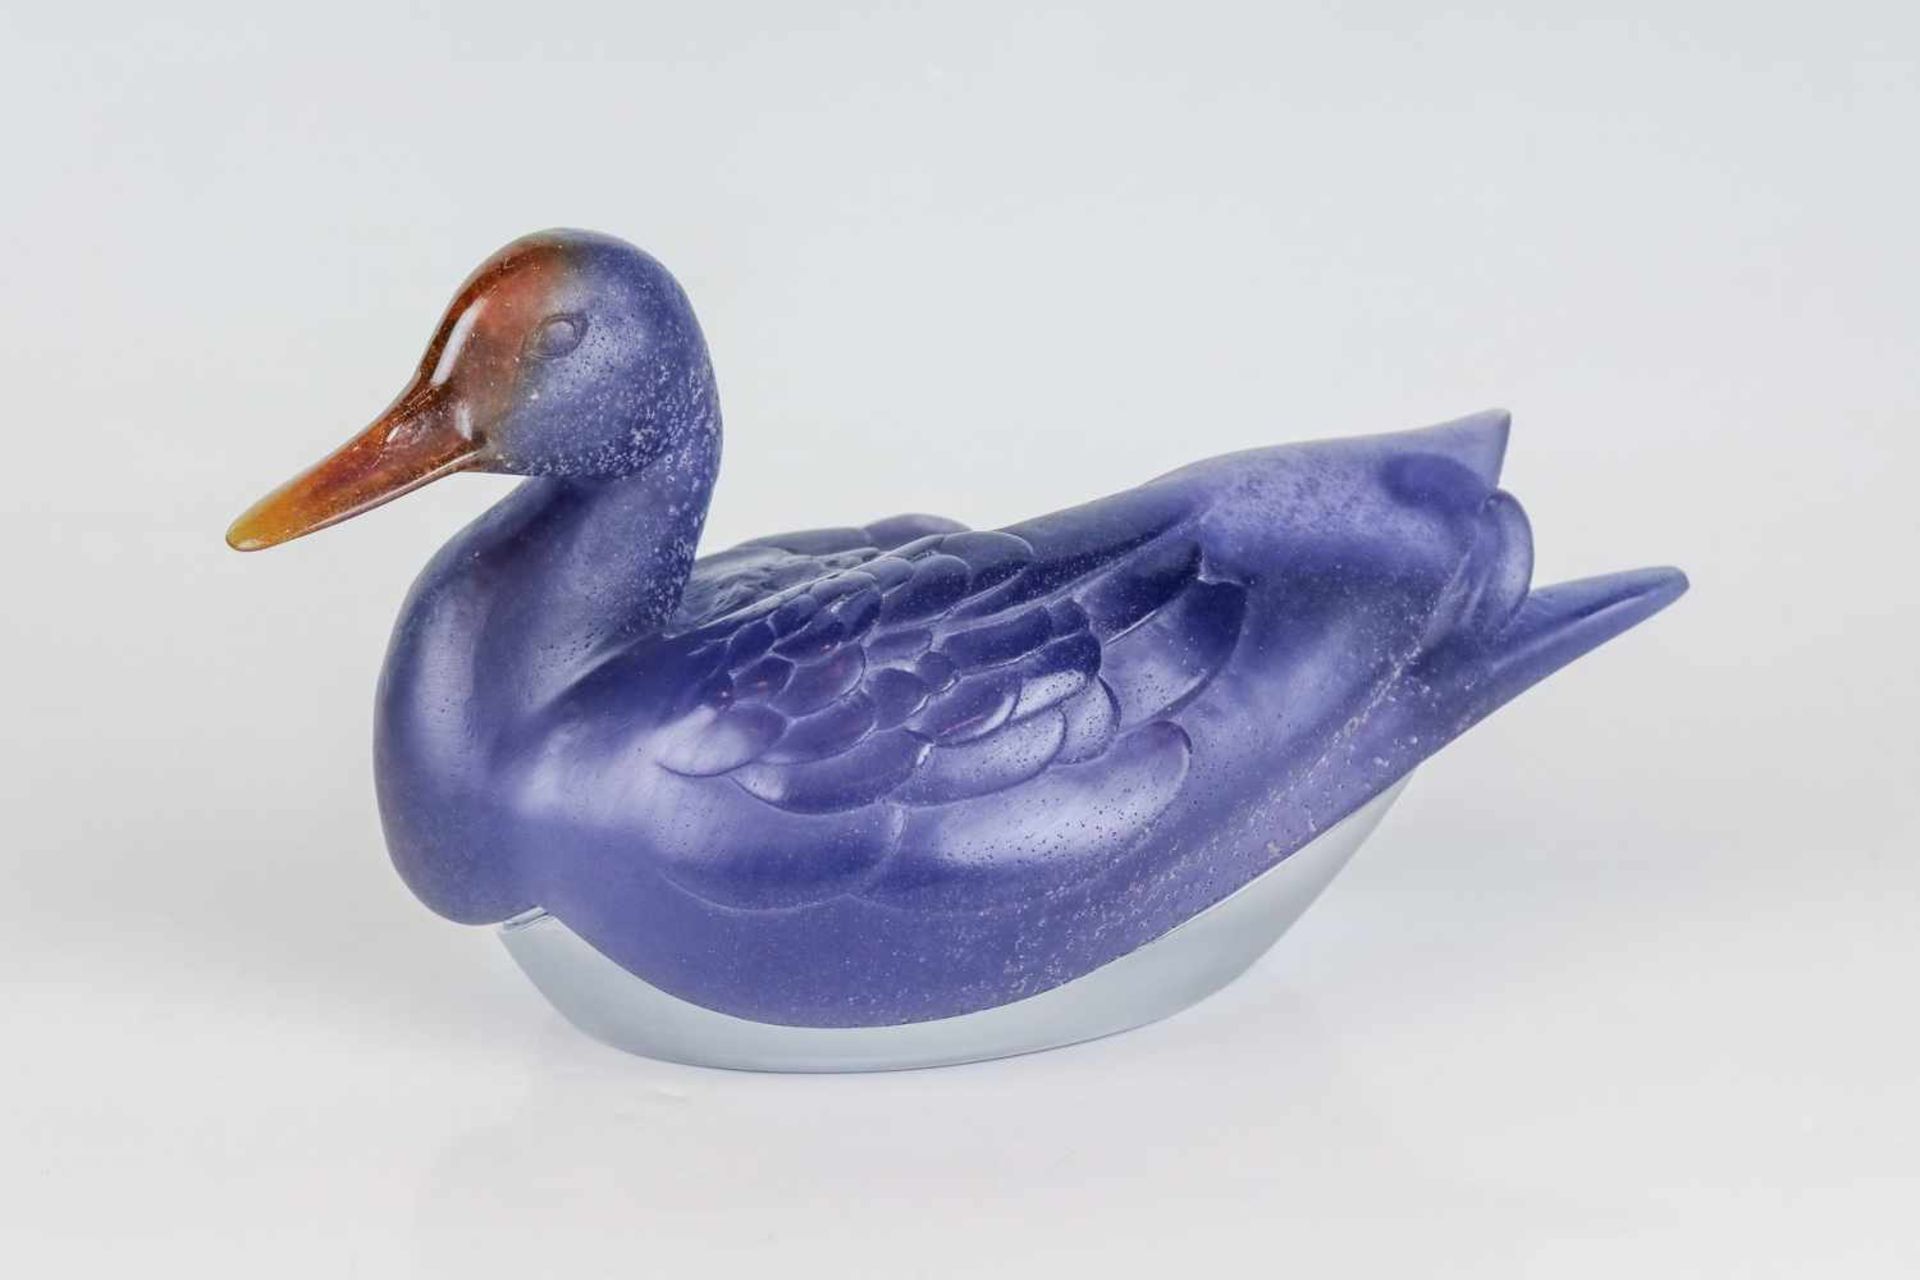 Ente als DeckeldoseDaum, NancyPâte de verre in Violett und Braun auf farblosem Kristallglas. H. 15